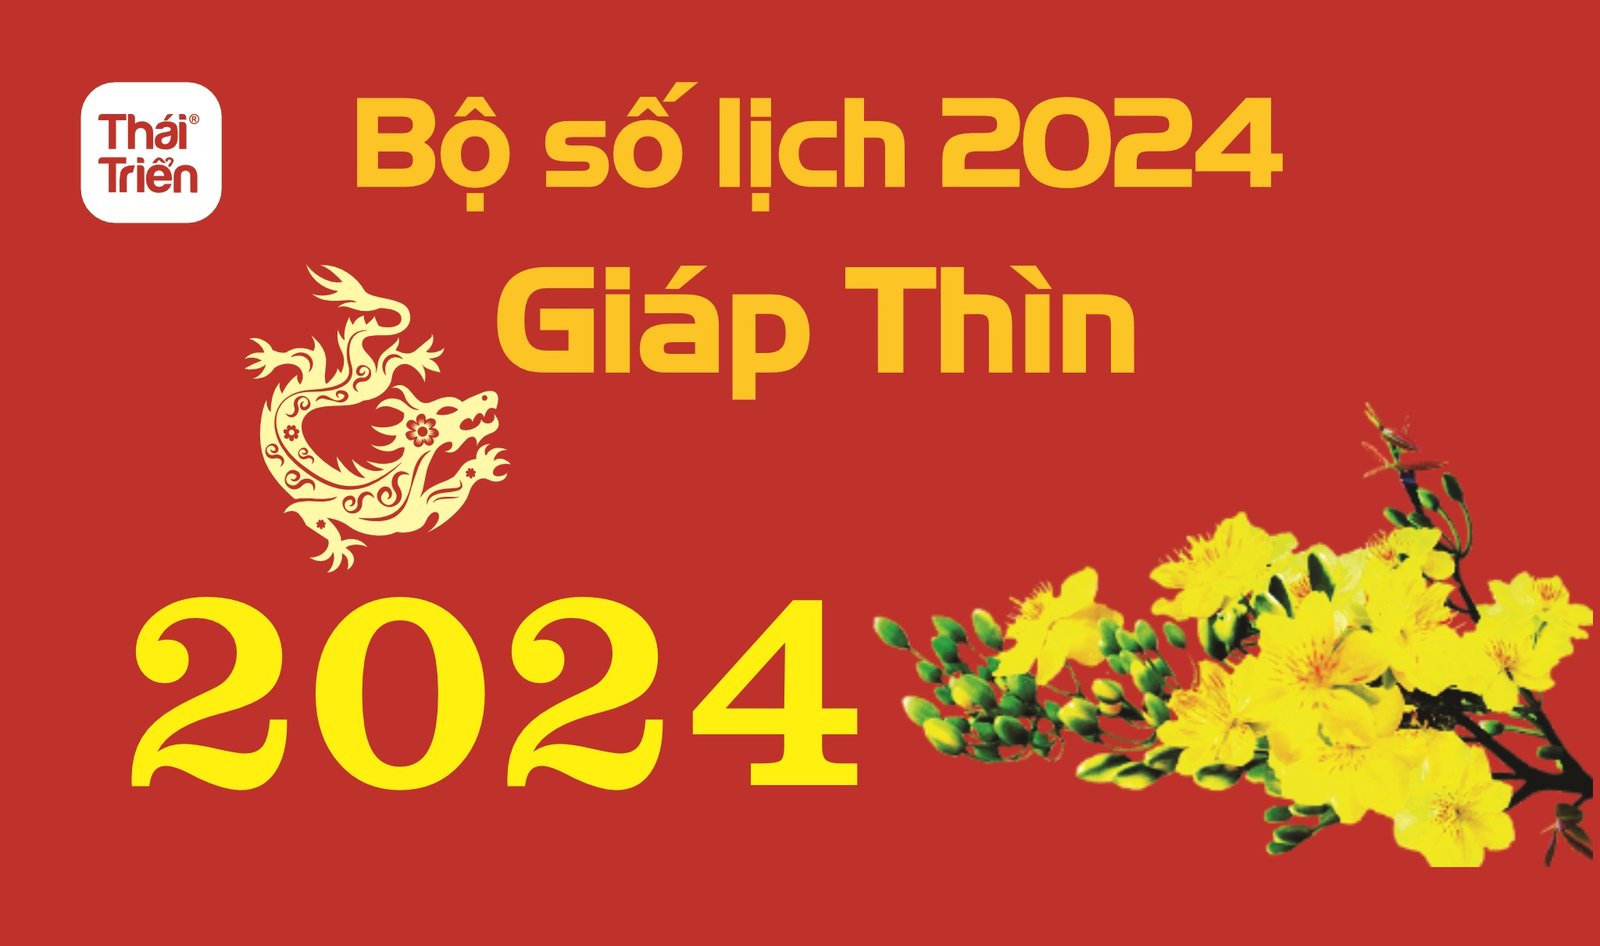 Bo so lich am duong 2024 thai trien